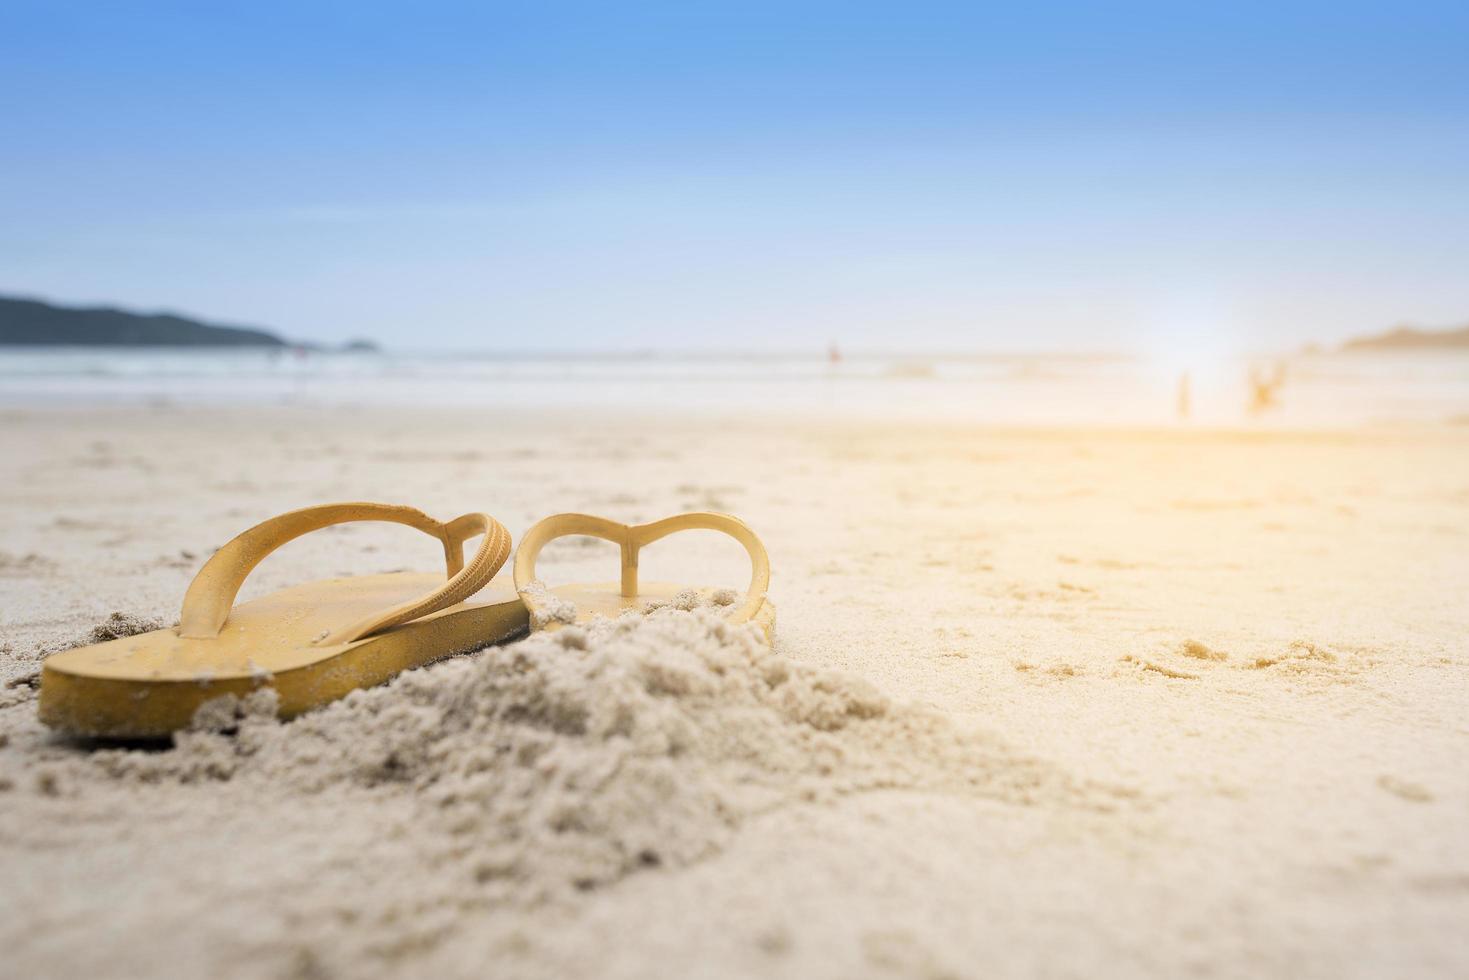 gele sandalen op het strand tijdens de zomer foto